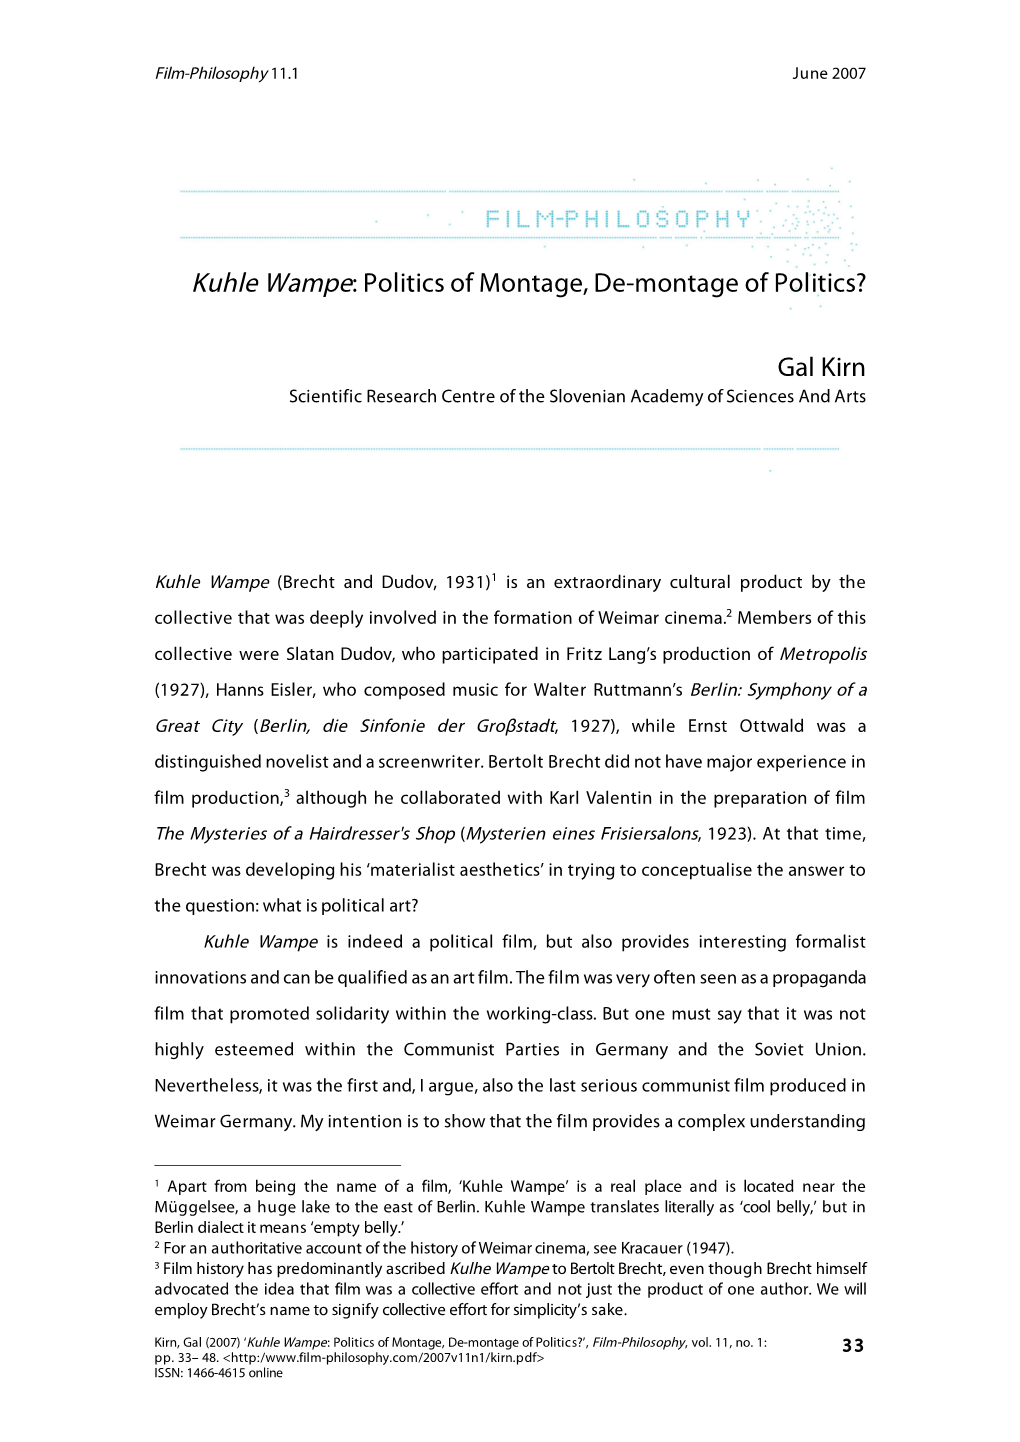 Kuhle Wampe: Politics of Montage, De-Montage of Politics?